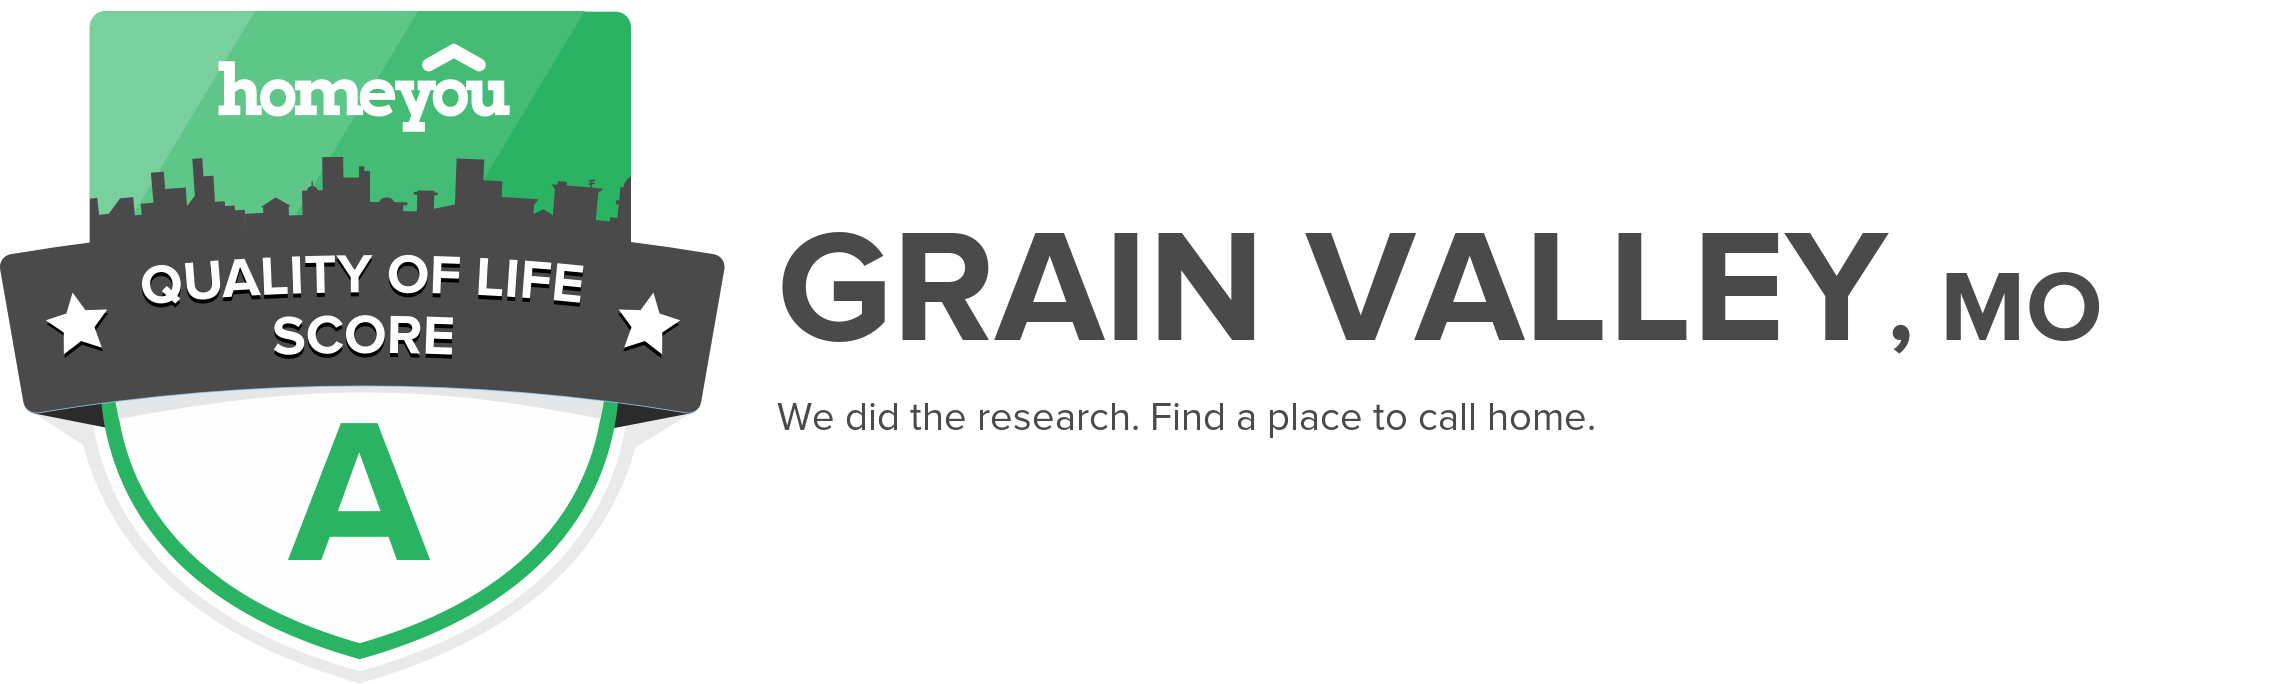 Grain Valley, MO